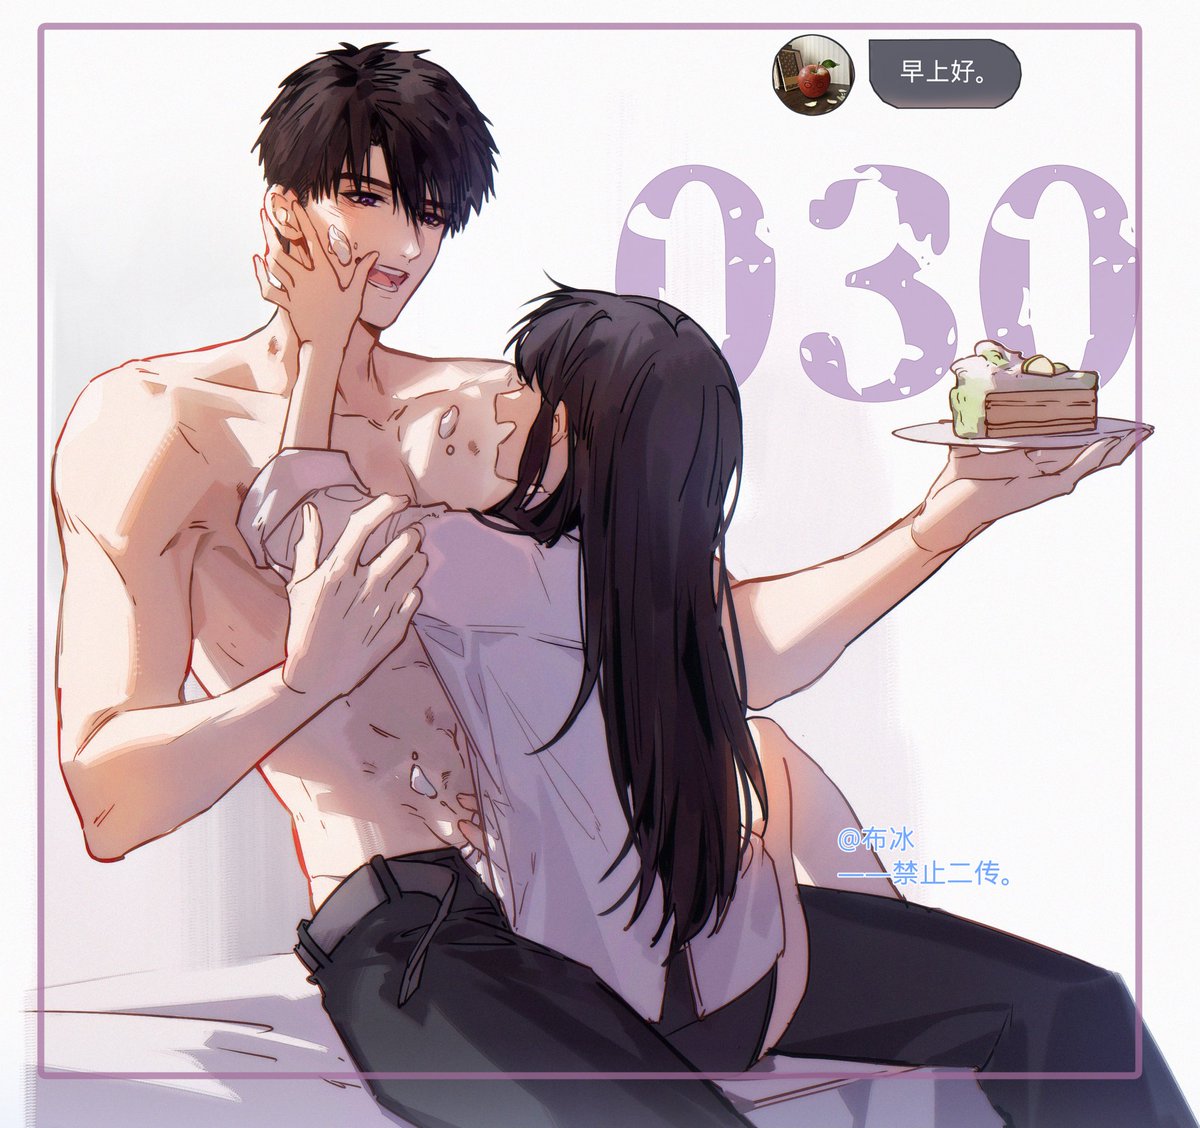 【早上好】 day30 cake~cake~ #夏以昼 #Caleb #マヒル #하우주 #恋と深空 #LoveandDeepspace